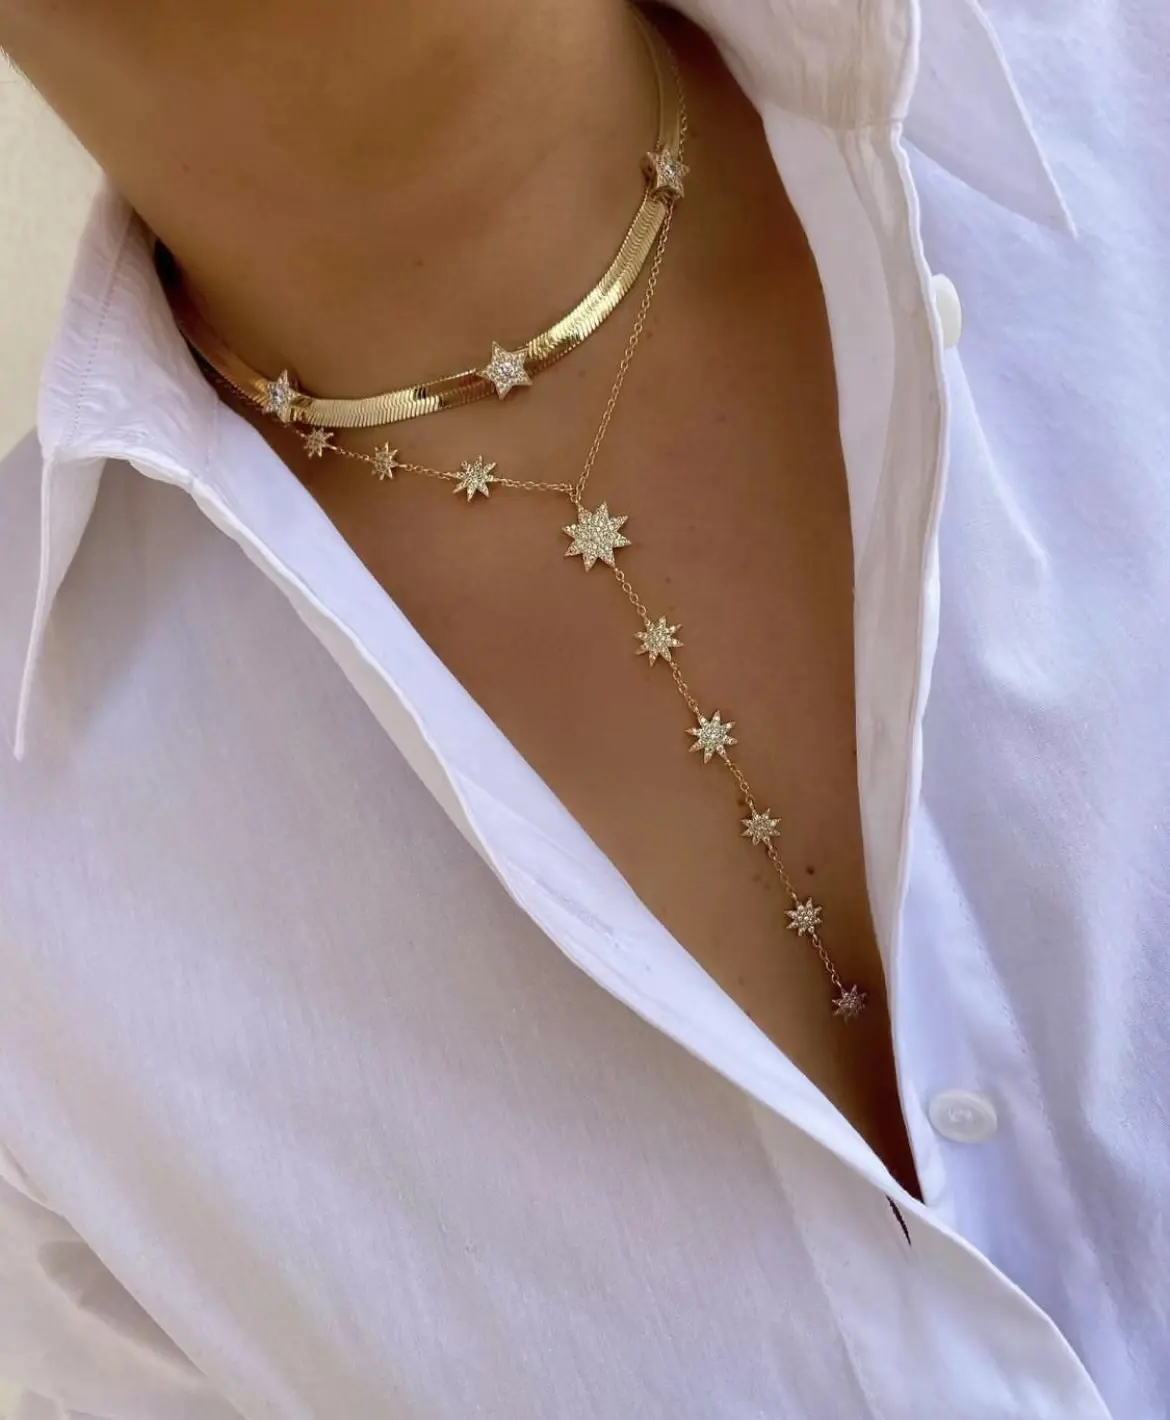 Mode Exquisite einfache und elegante Damen schmuck 18 Karat vergoldet Star Fashion Schlüsselbein Kette Senior Schmuck Halskette